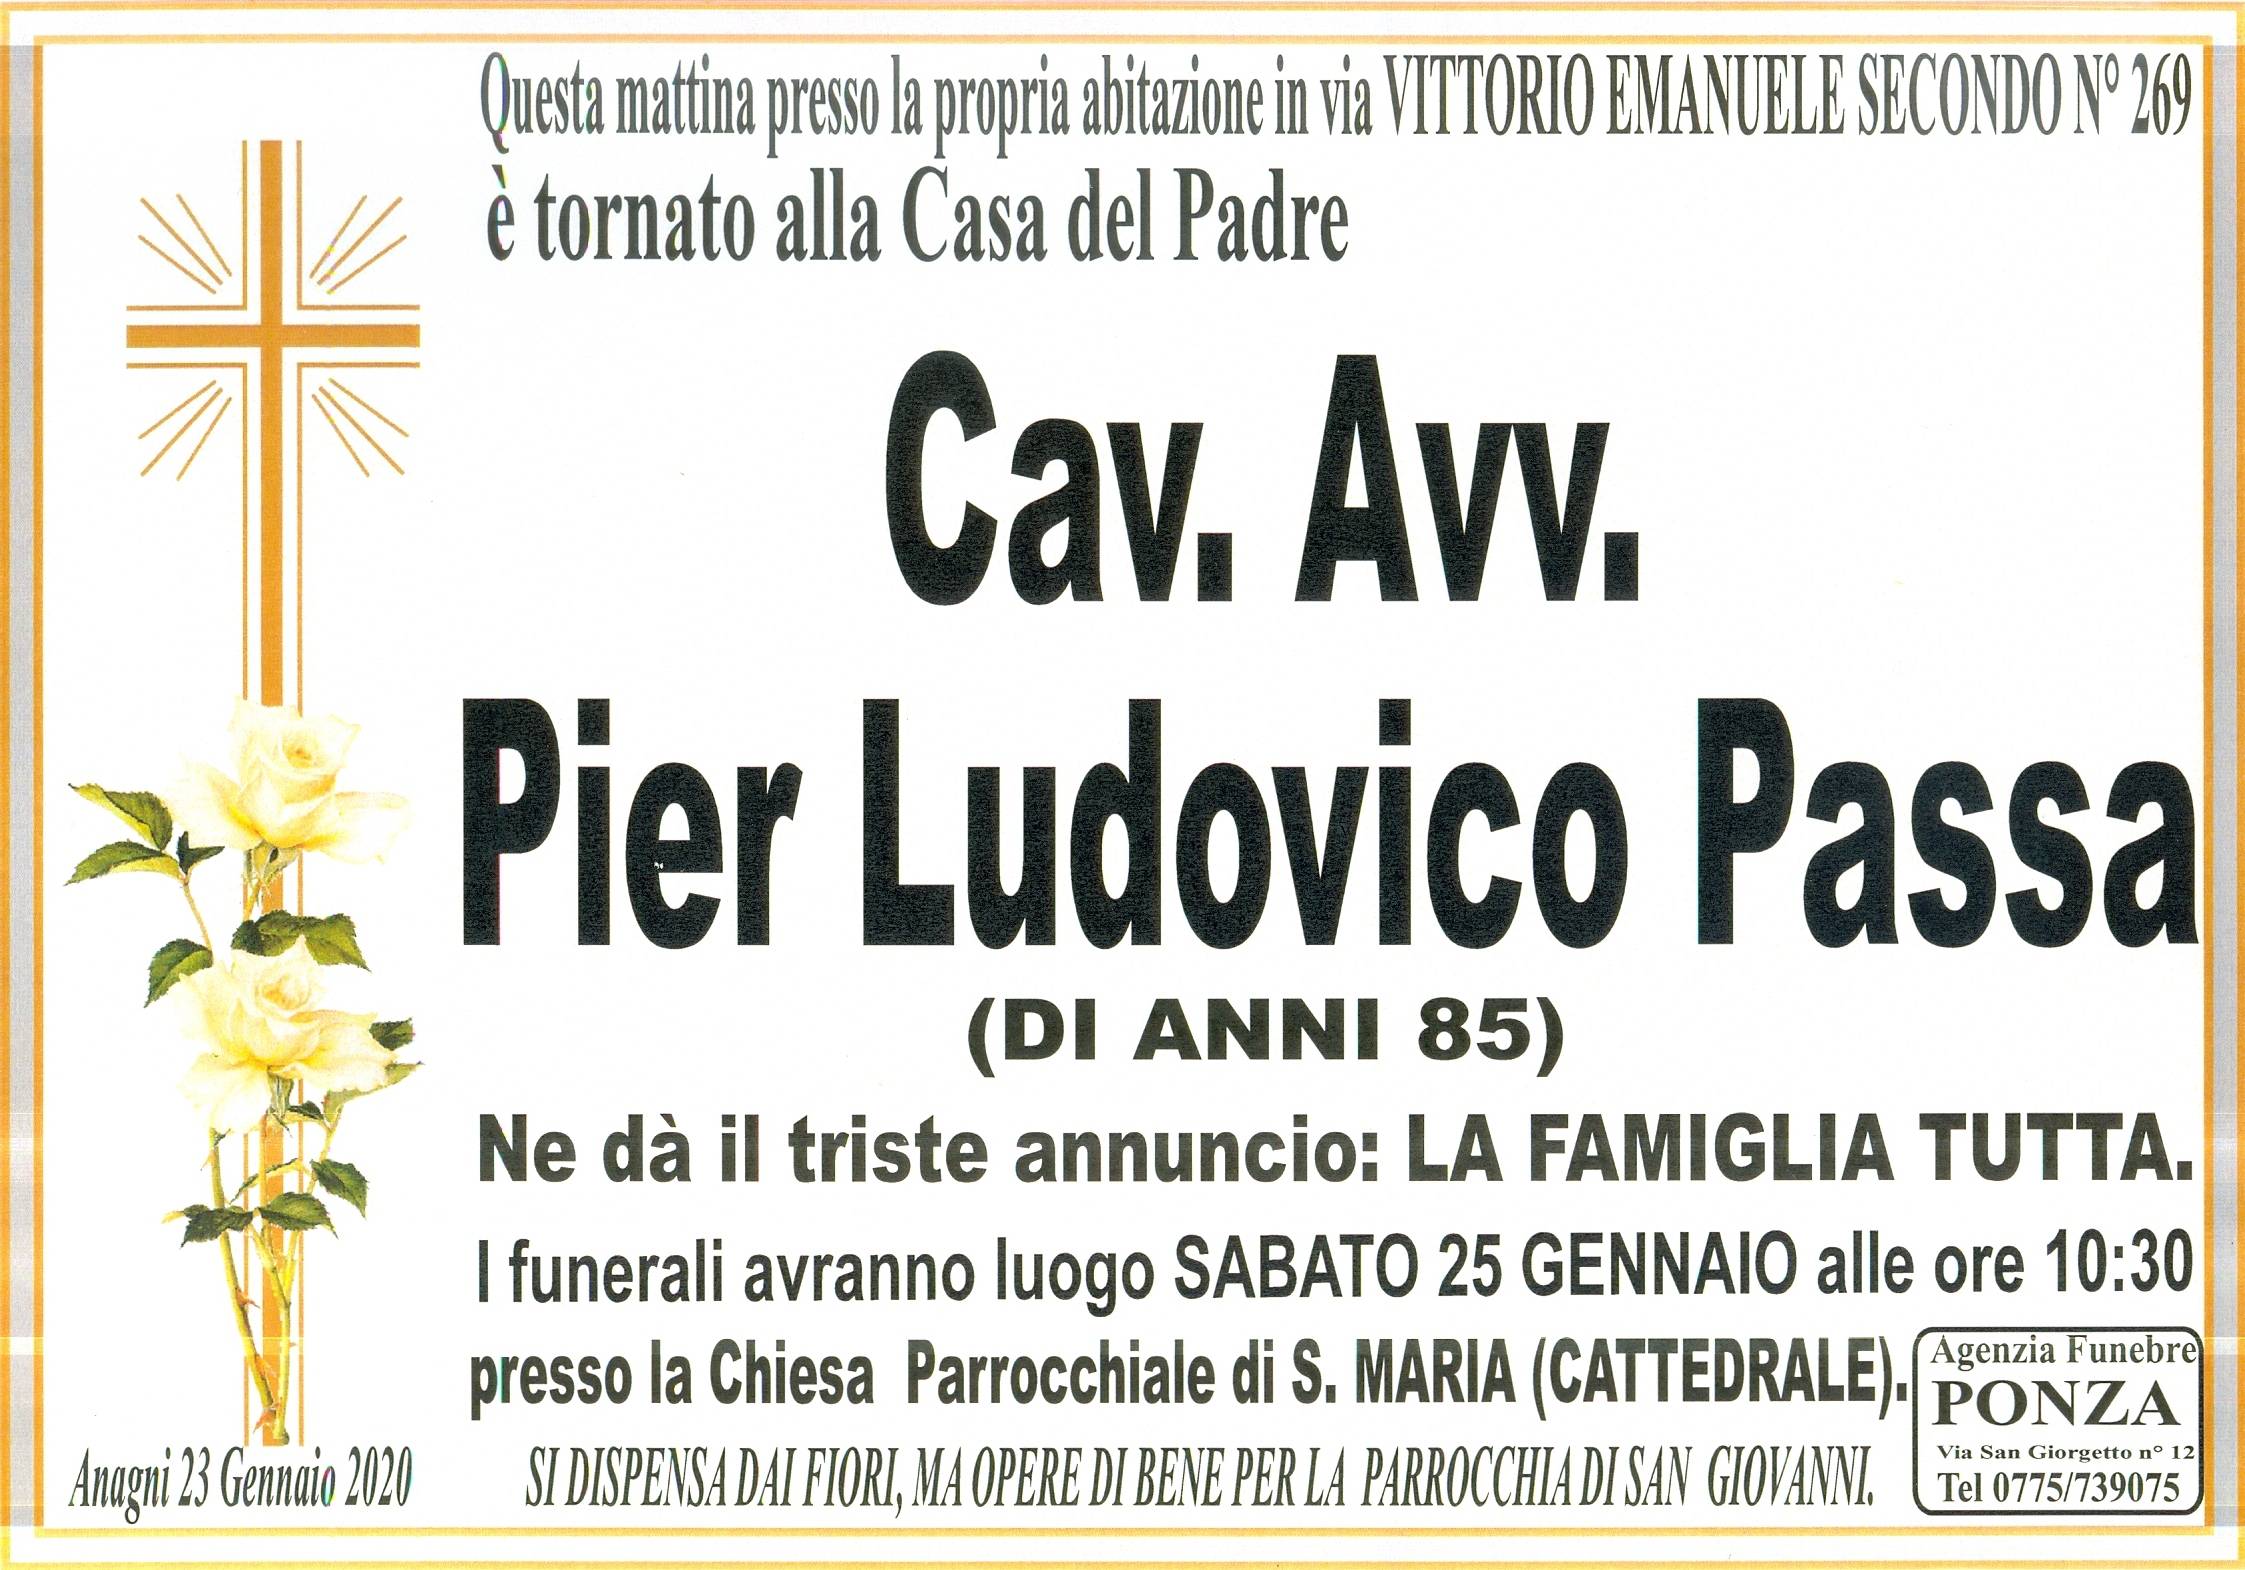 Cav. Avv. Pier Ludovico Passa